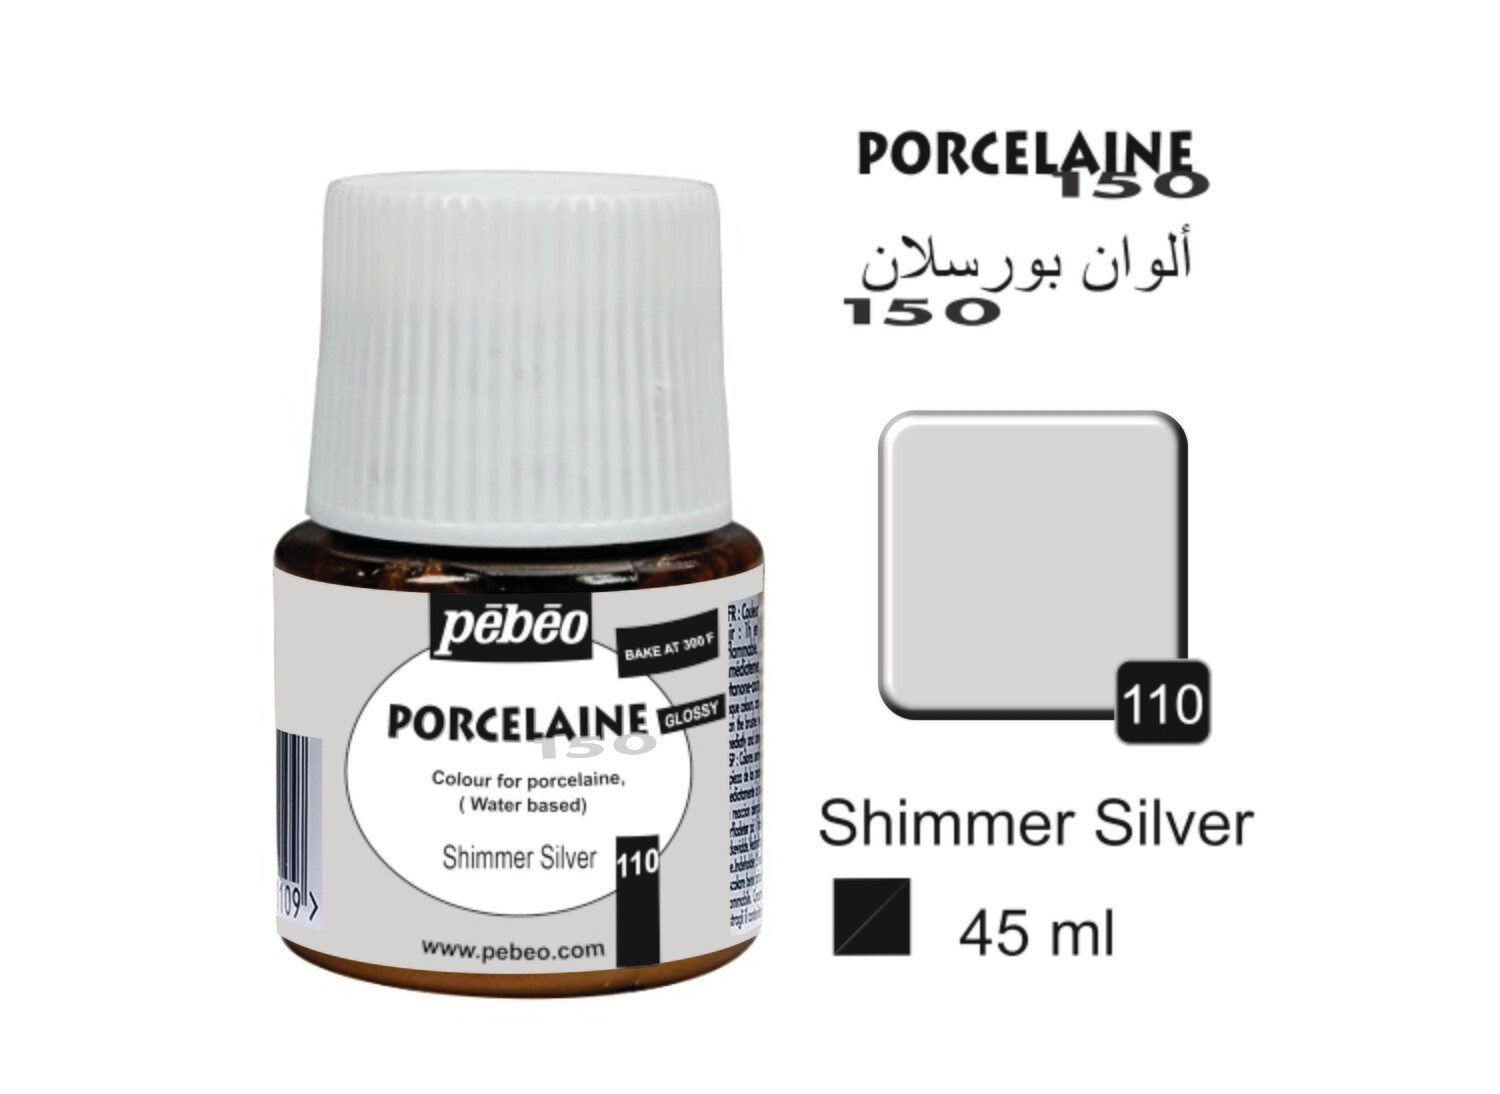 PORCELAINE 150, SHIMMER 45 ml, Shimmer silver No. 110